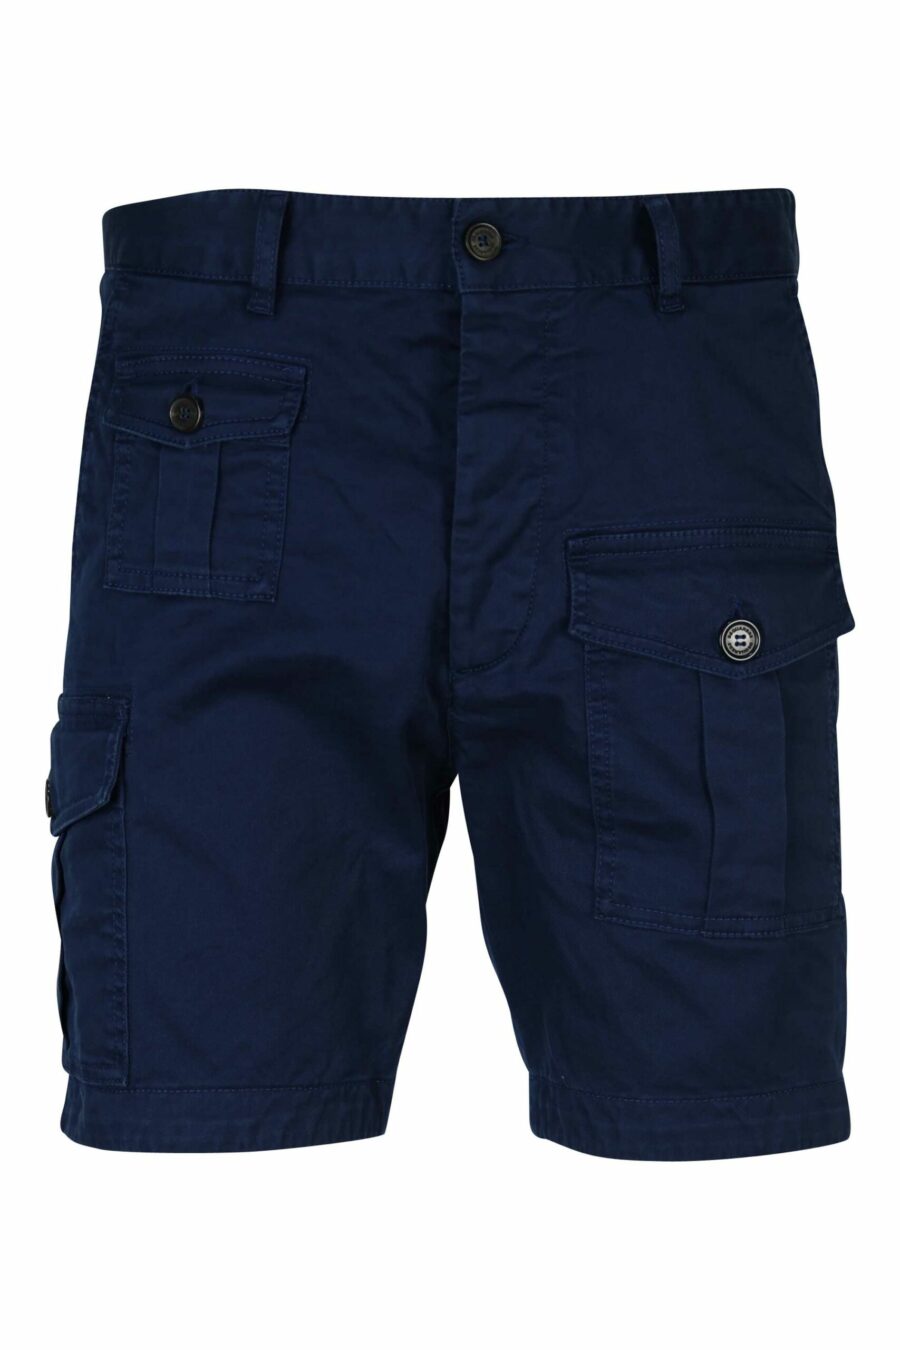 Pantalón azul oscuro corto "sexy cargo" - 8054148321772 scaled